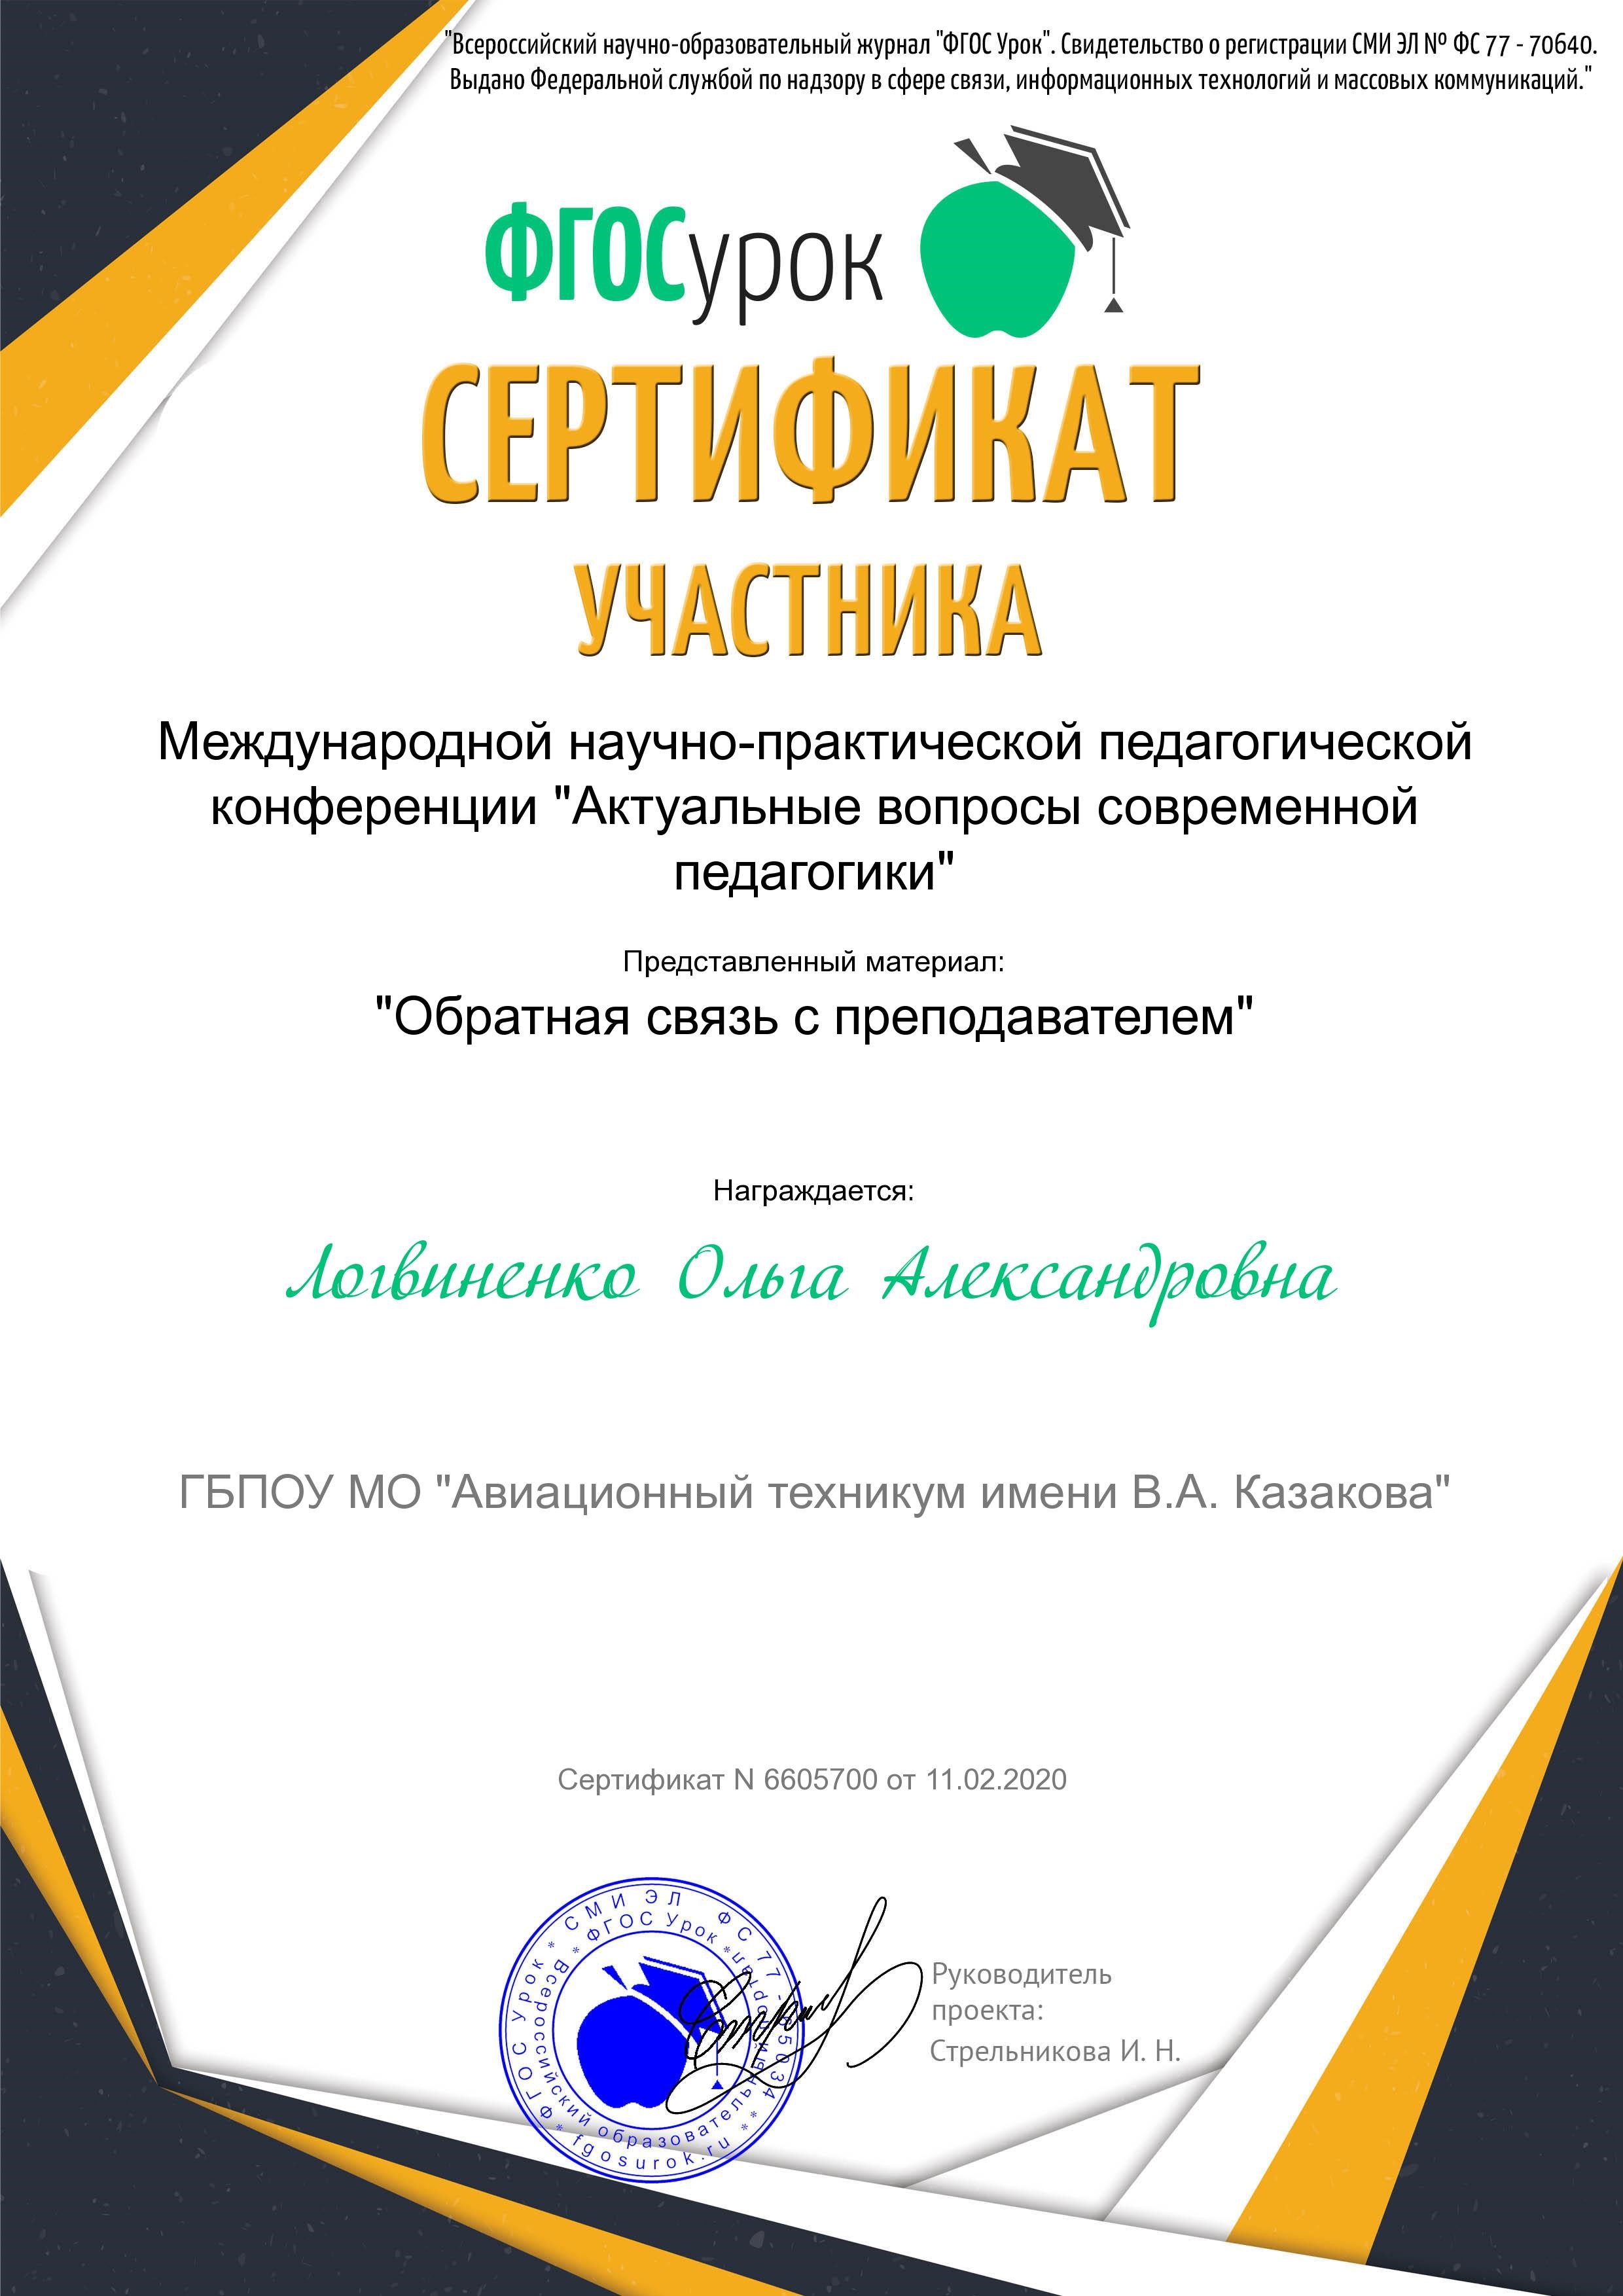 certificate 11 02 2020